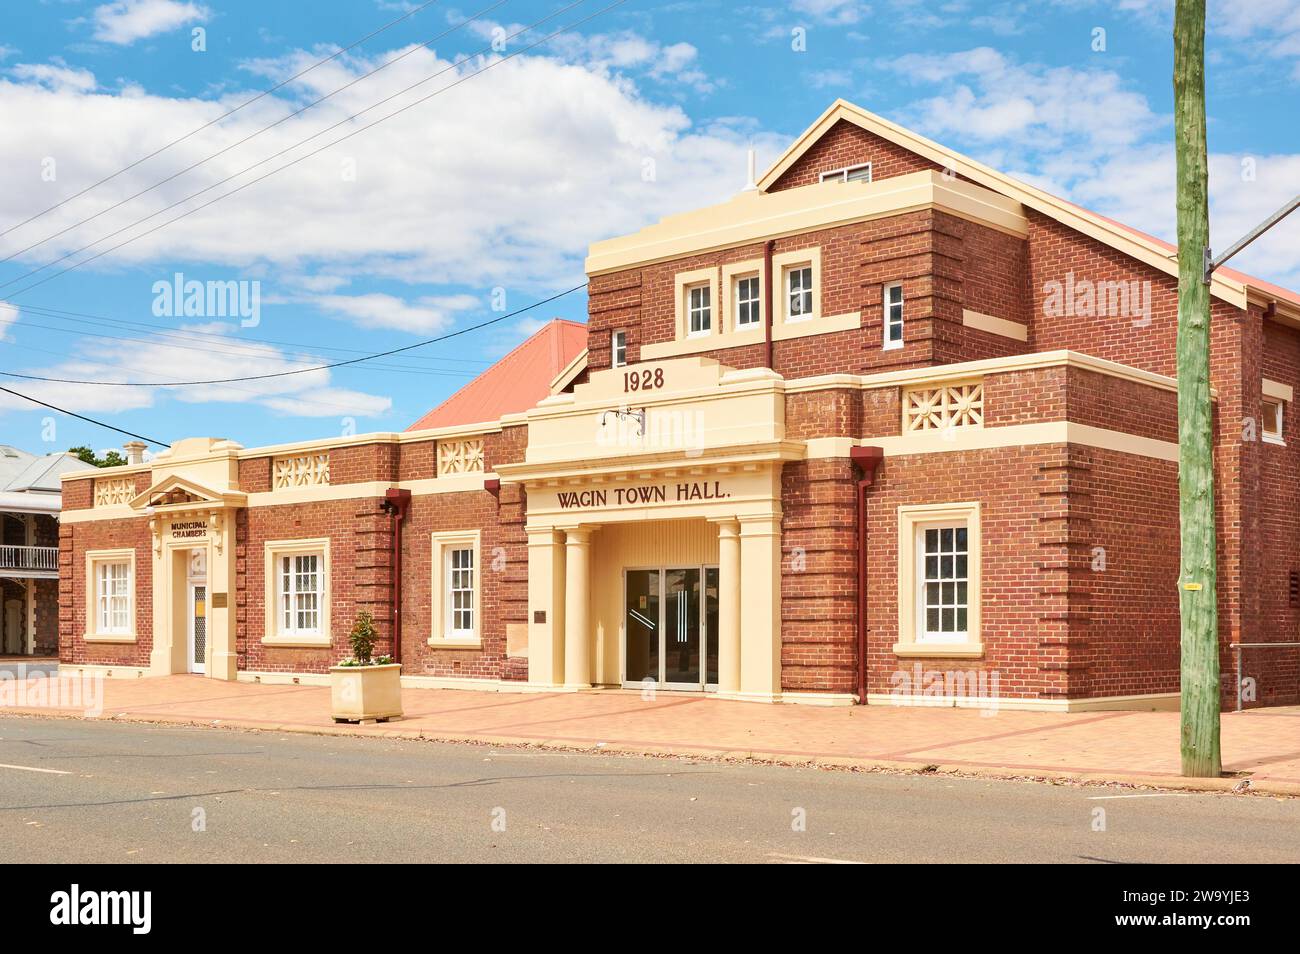 Il municipio di Wagin è stato costruito tra il 1896 e il 1928, un edificio storico in mattoni rossi nella città di Wagin, Australia Occidentale. Foto Stock